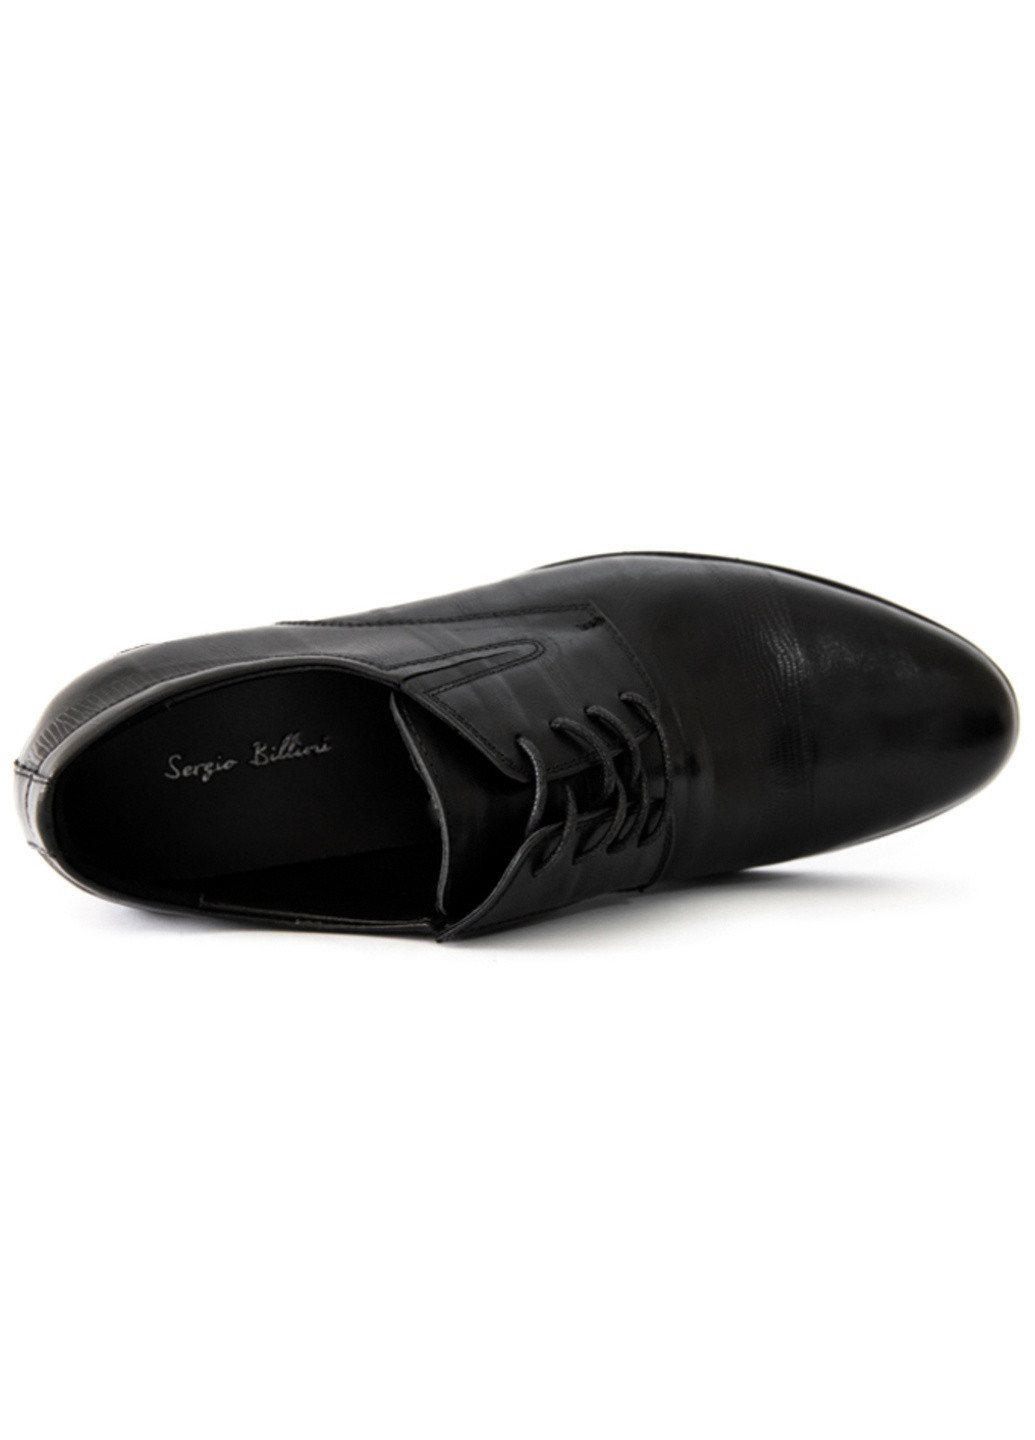 Черные вечерние туфли мужские бренда 9402136_(1) Sergio Billini на шнурках